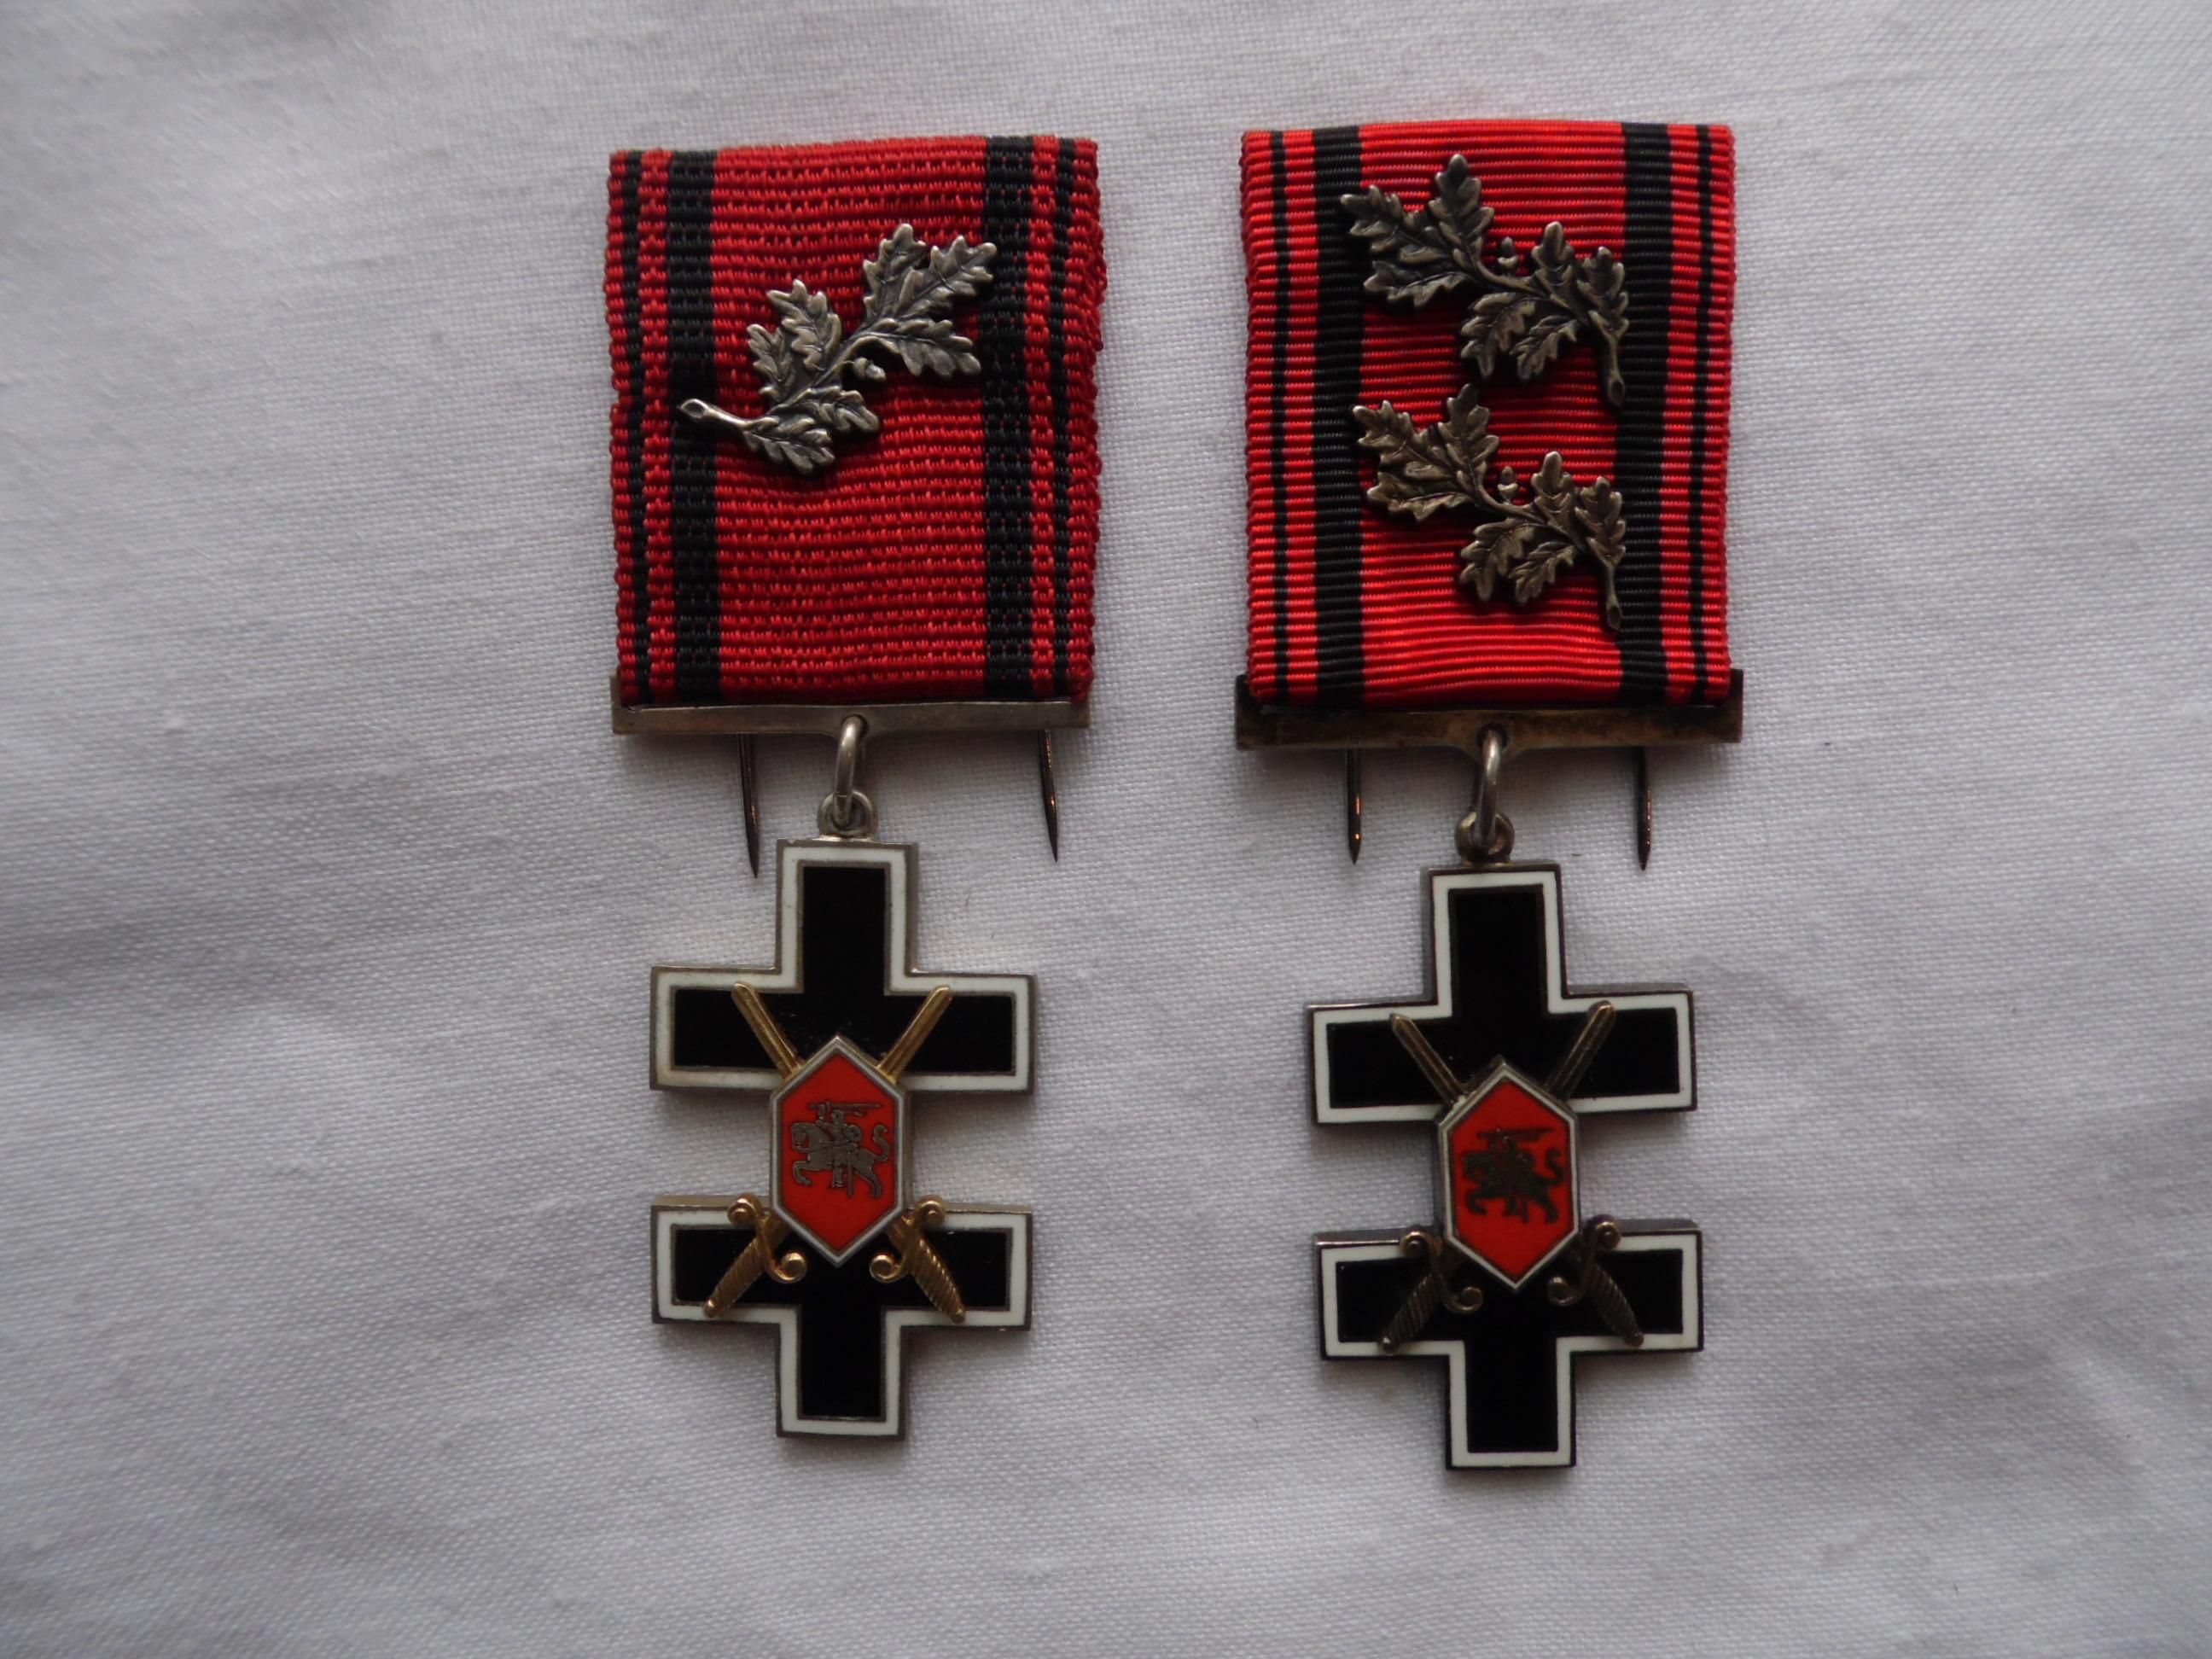 IV степени и V степени ордена Креста Витиса 1930 года. Из коллекции Г. Сакалаускаса